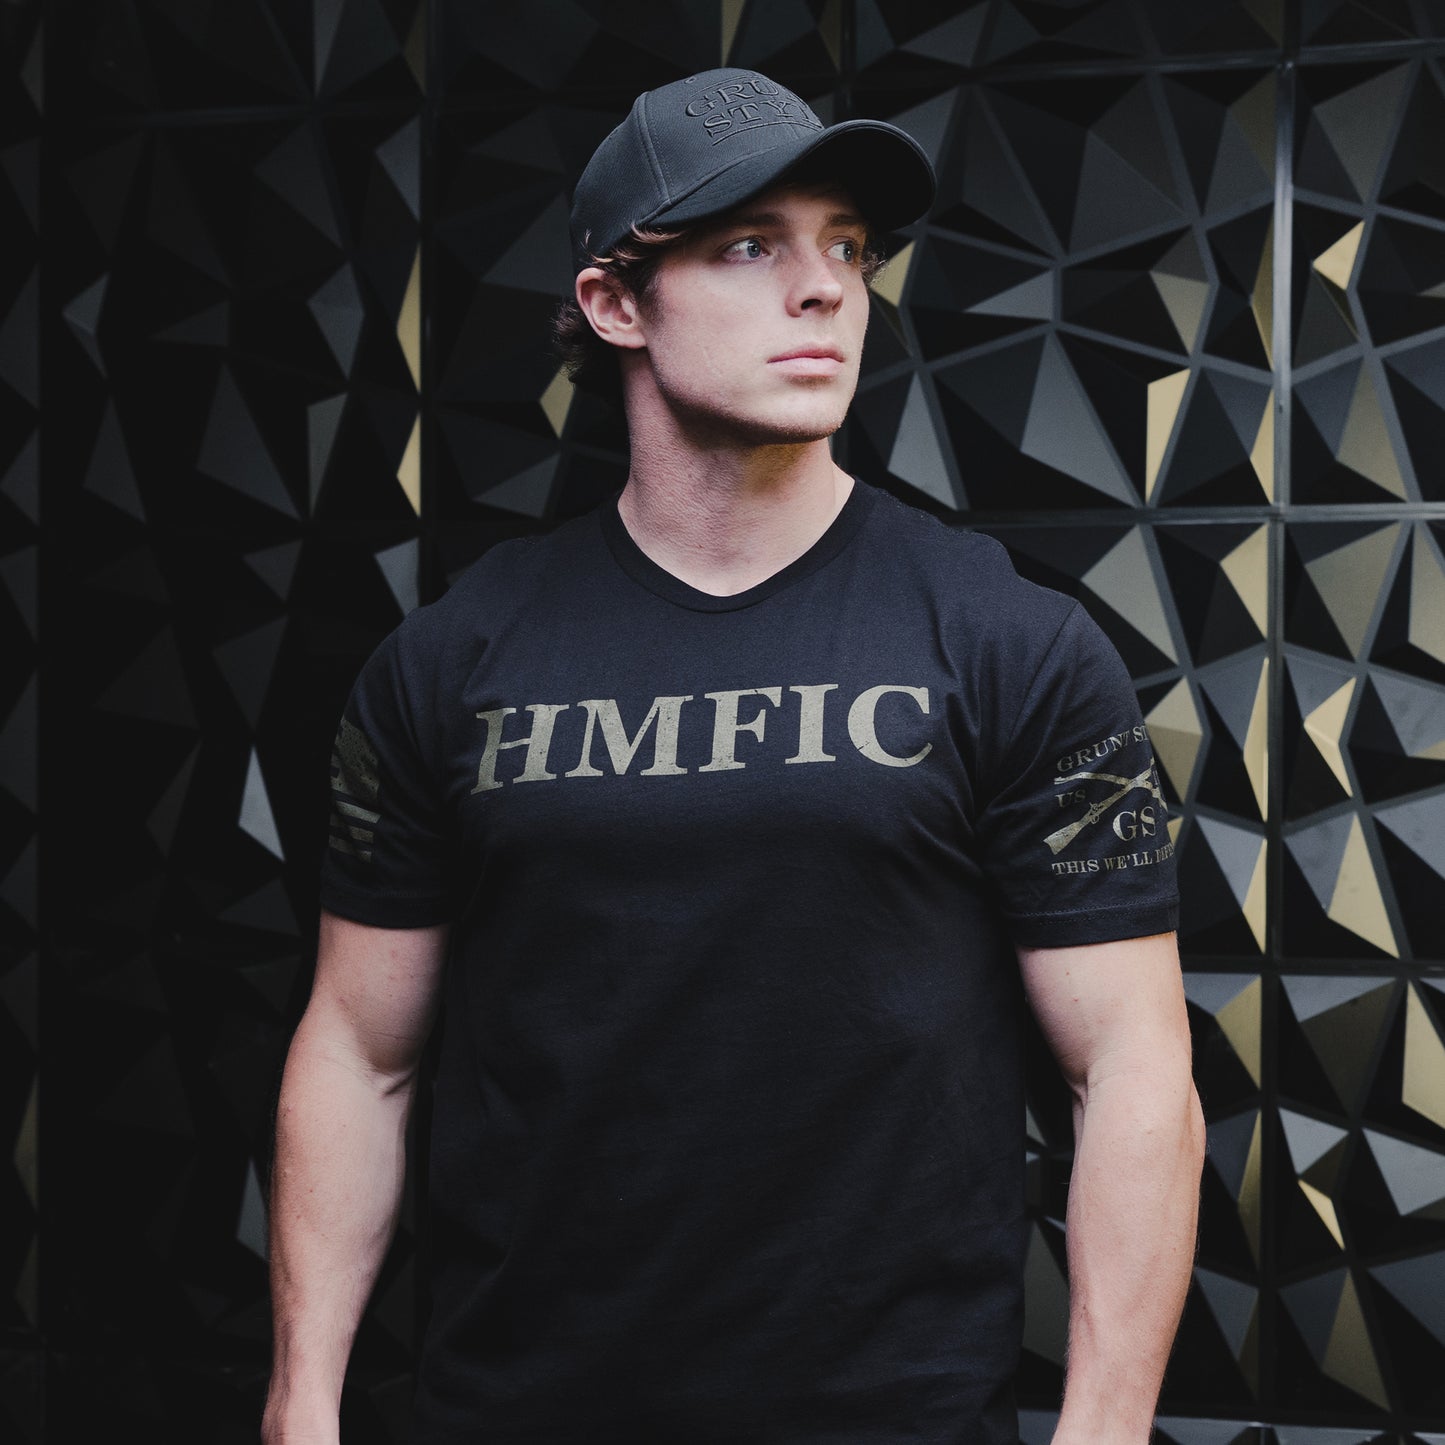 Military shirt - HMFIC 